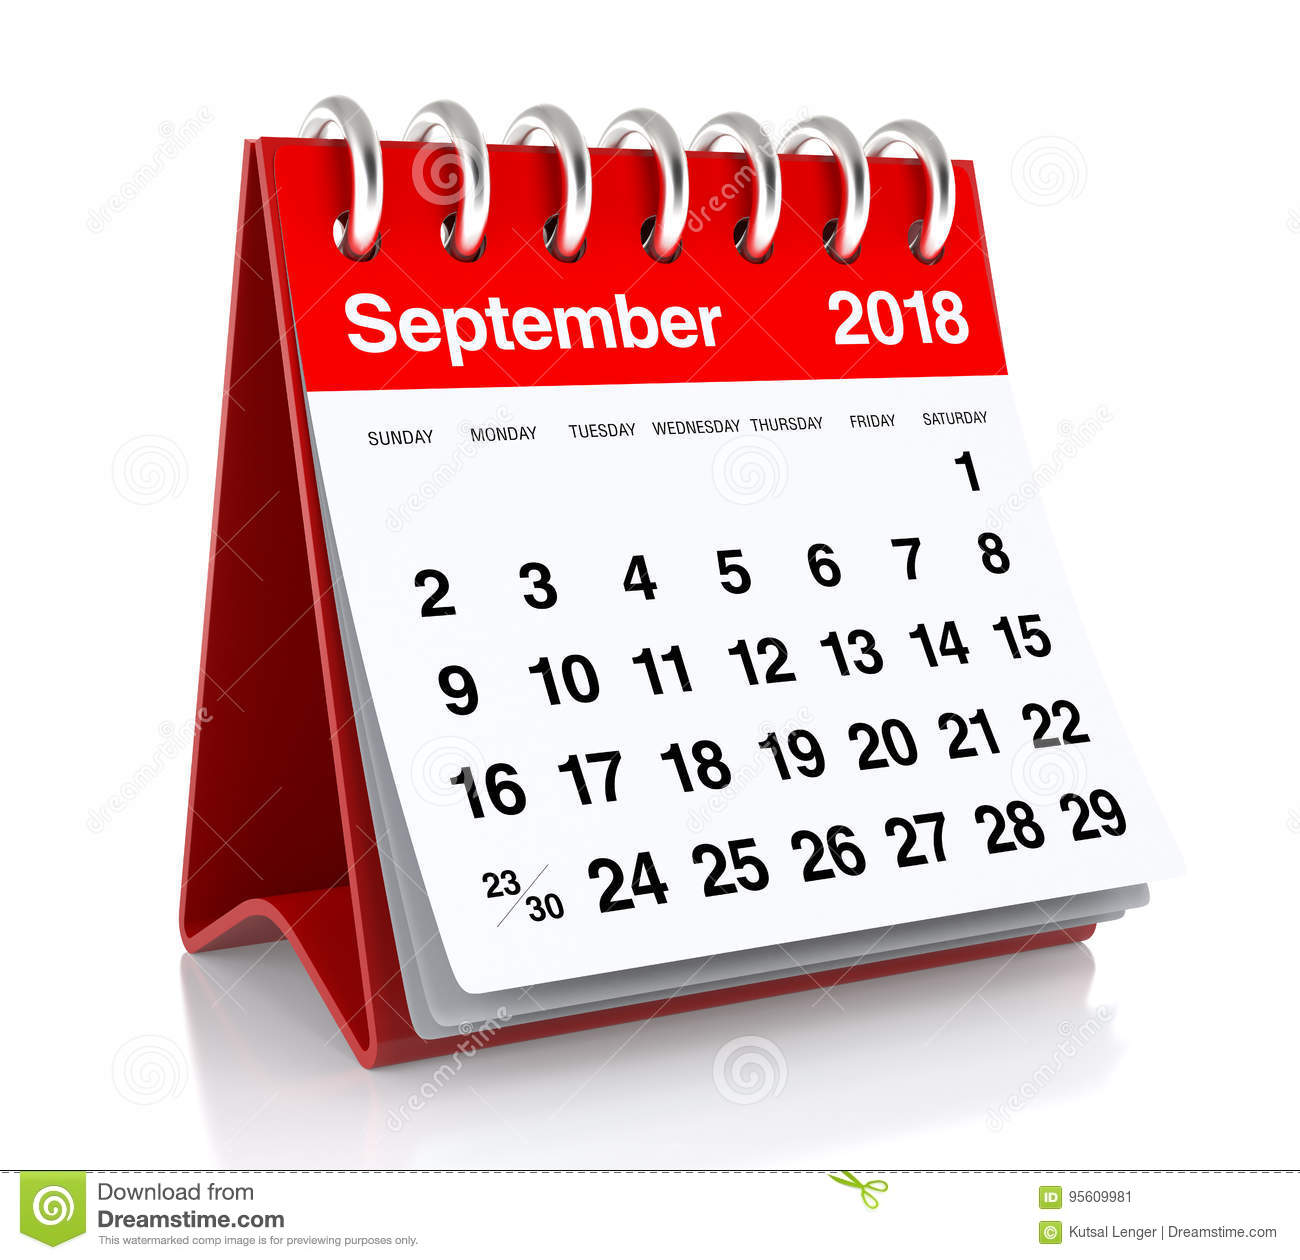 September calendar clipart